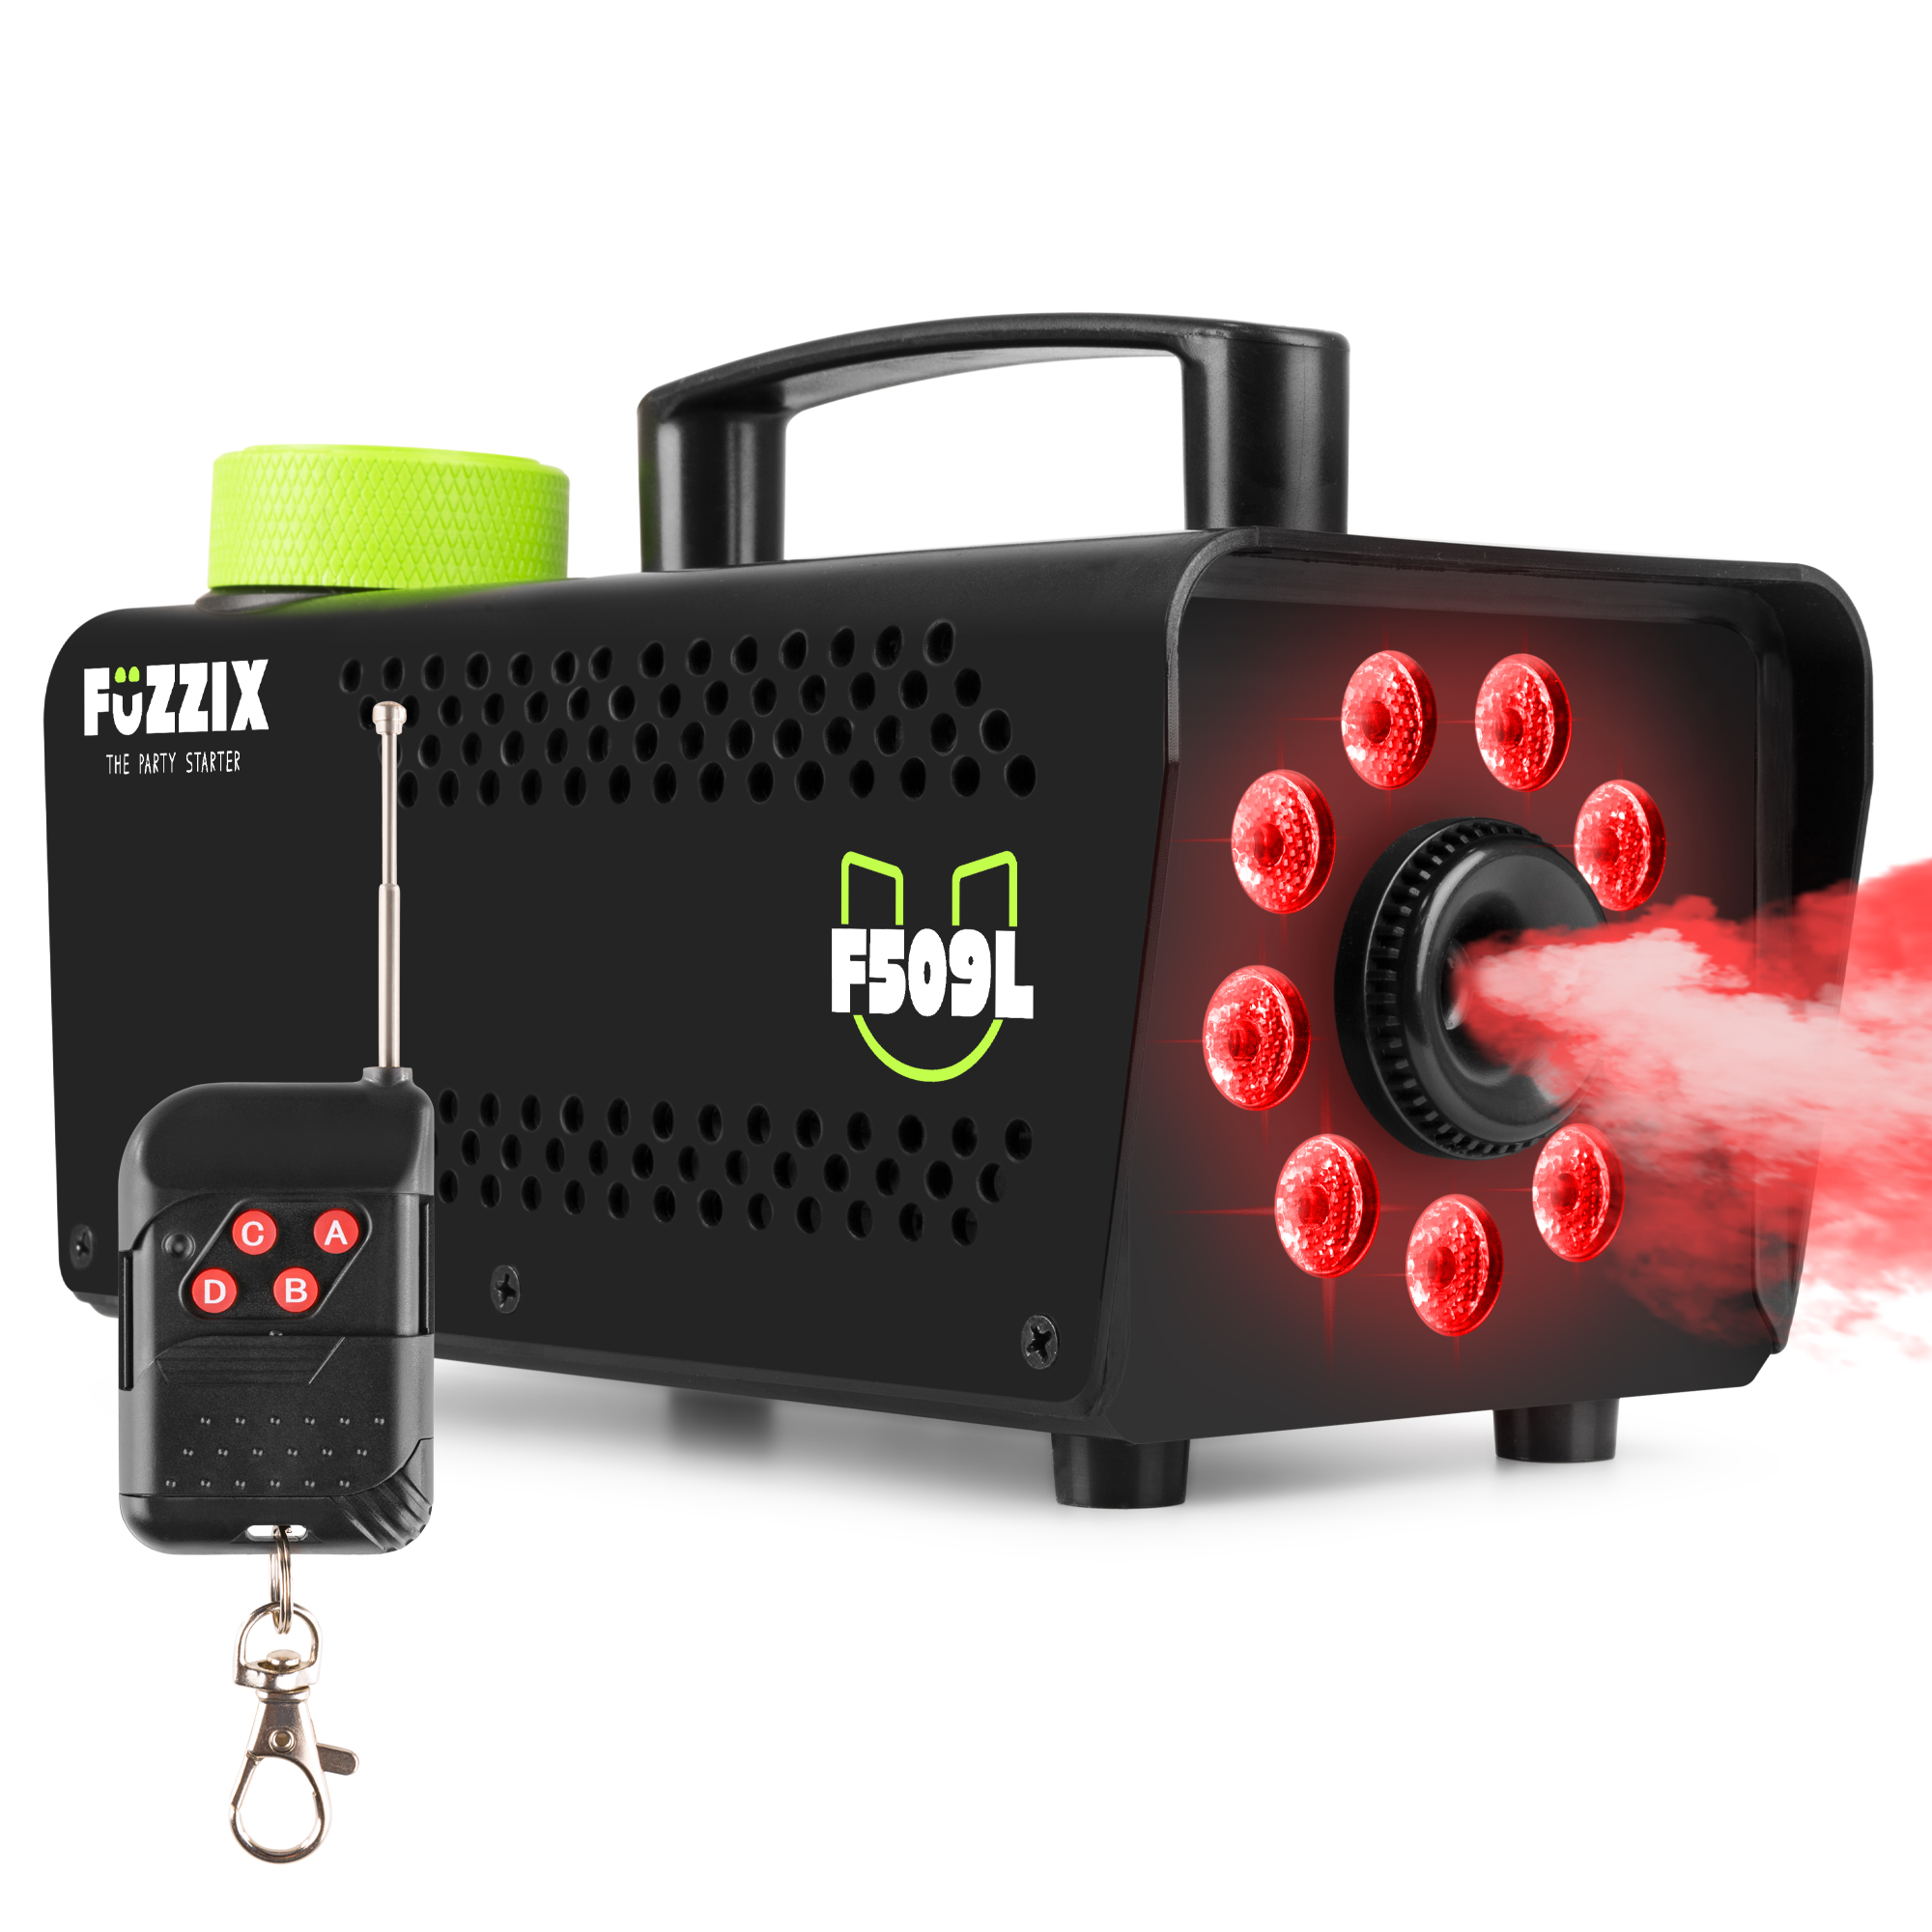 Fuzzix F509L Máquina de humo para fiestas de 500 w con 9 LED RGB y mando a distancia inalámbrico